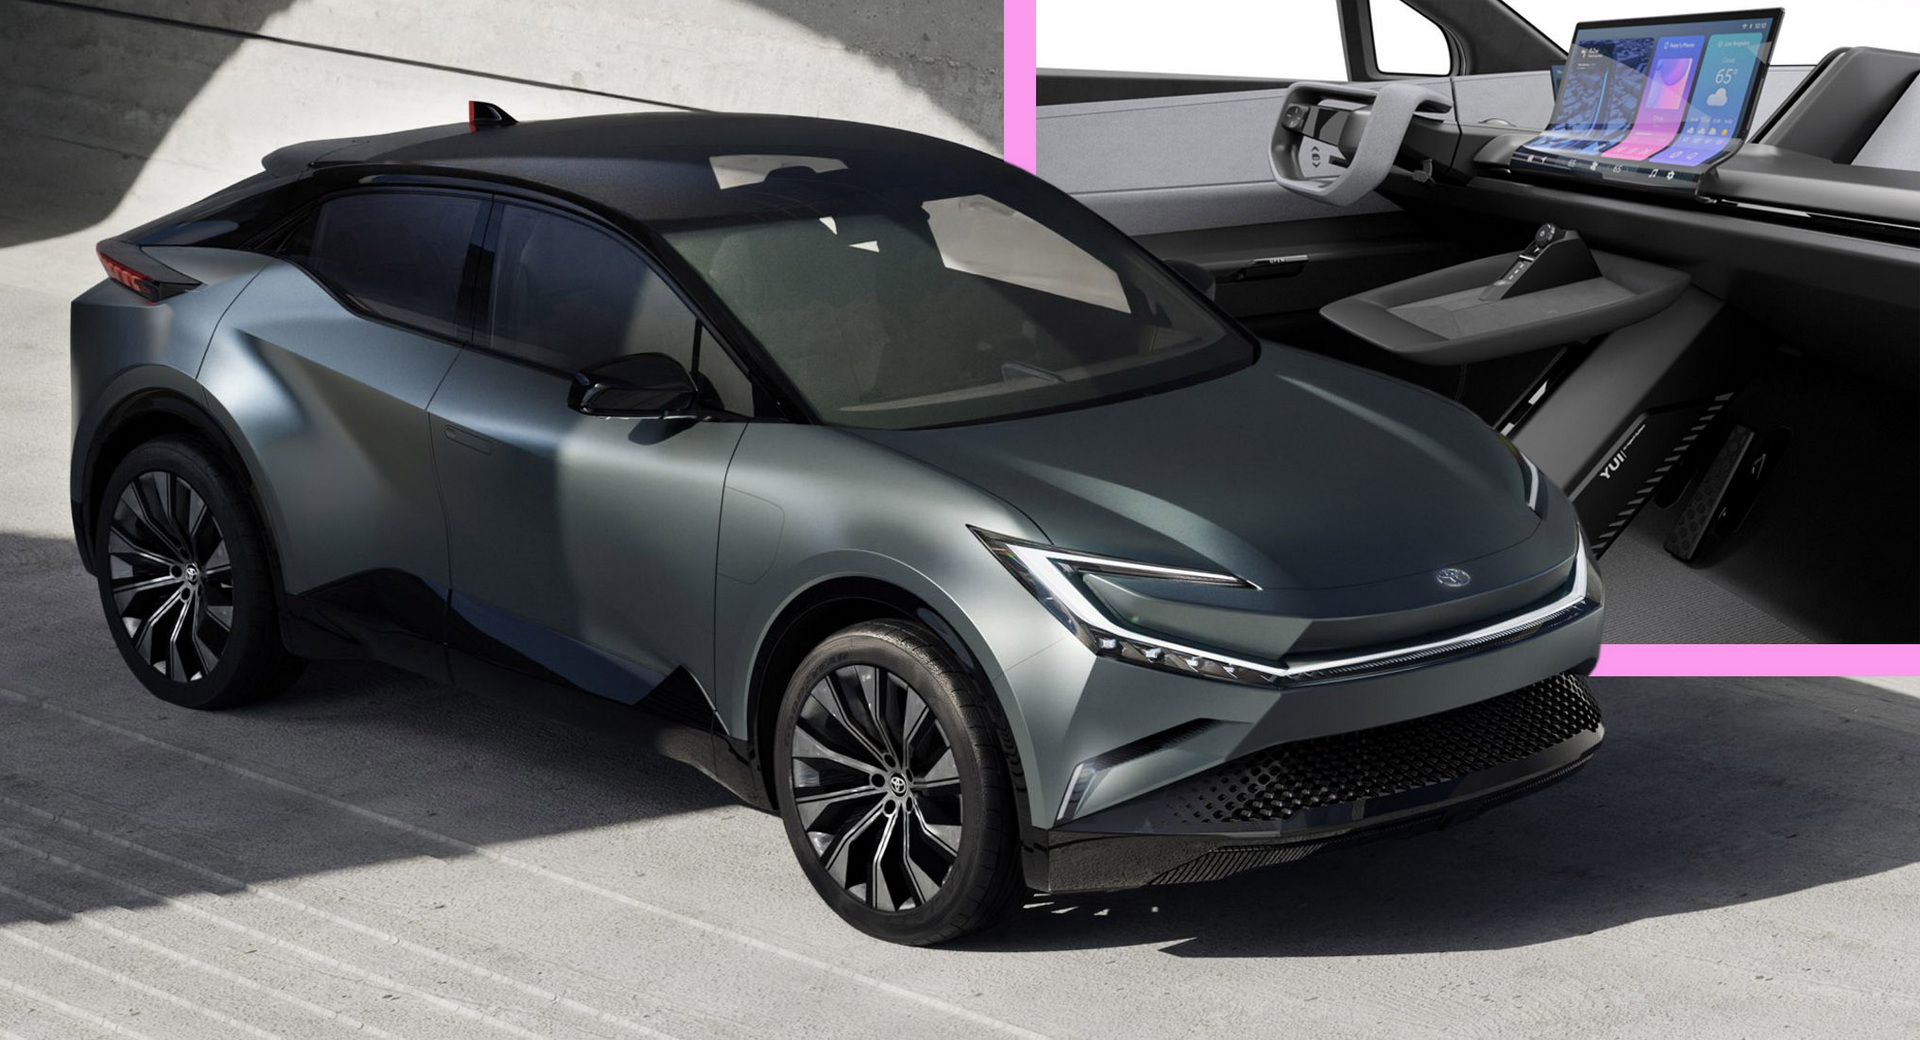 Le concept de SUV compact bZ de Toyota apporte un style accrocheur en Europe